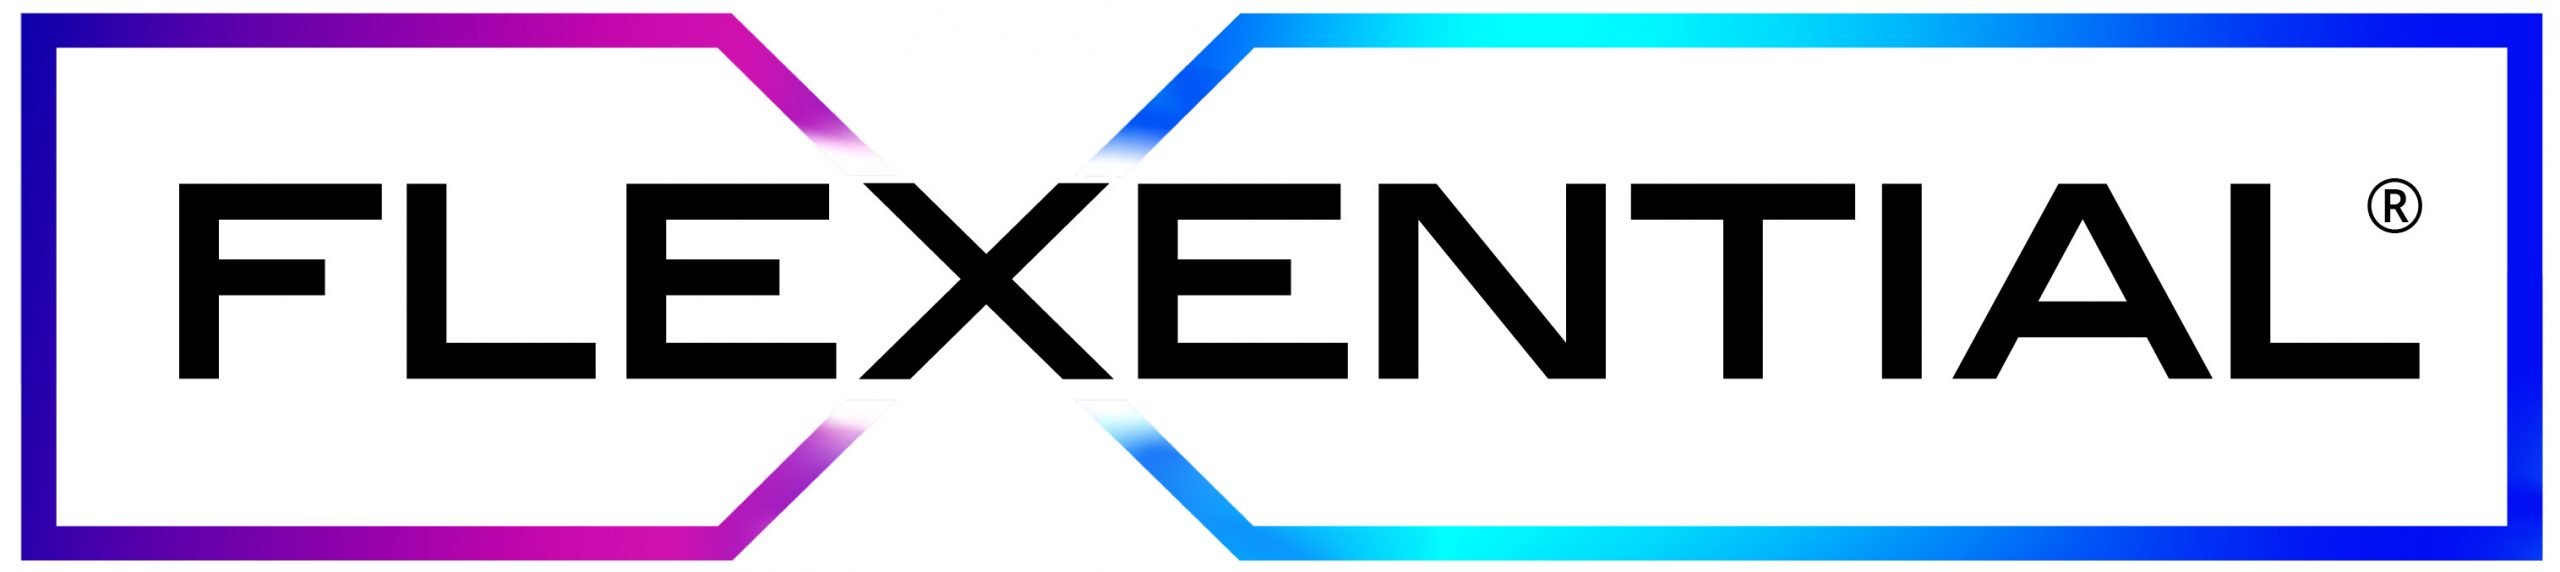 Flexential logo color-Registered (1)